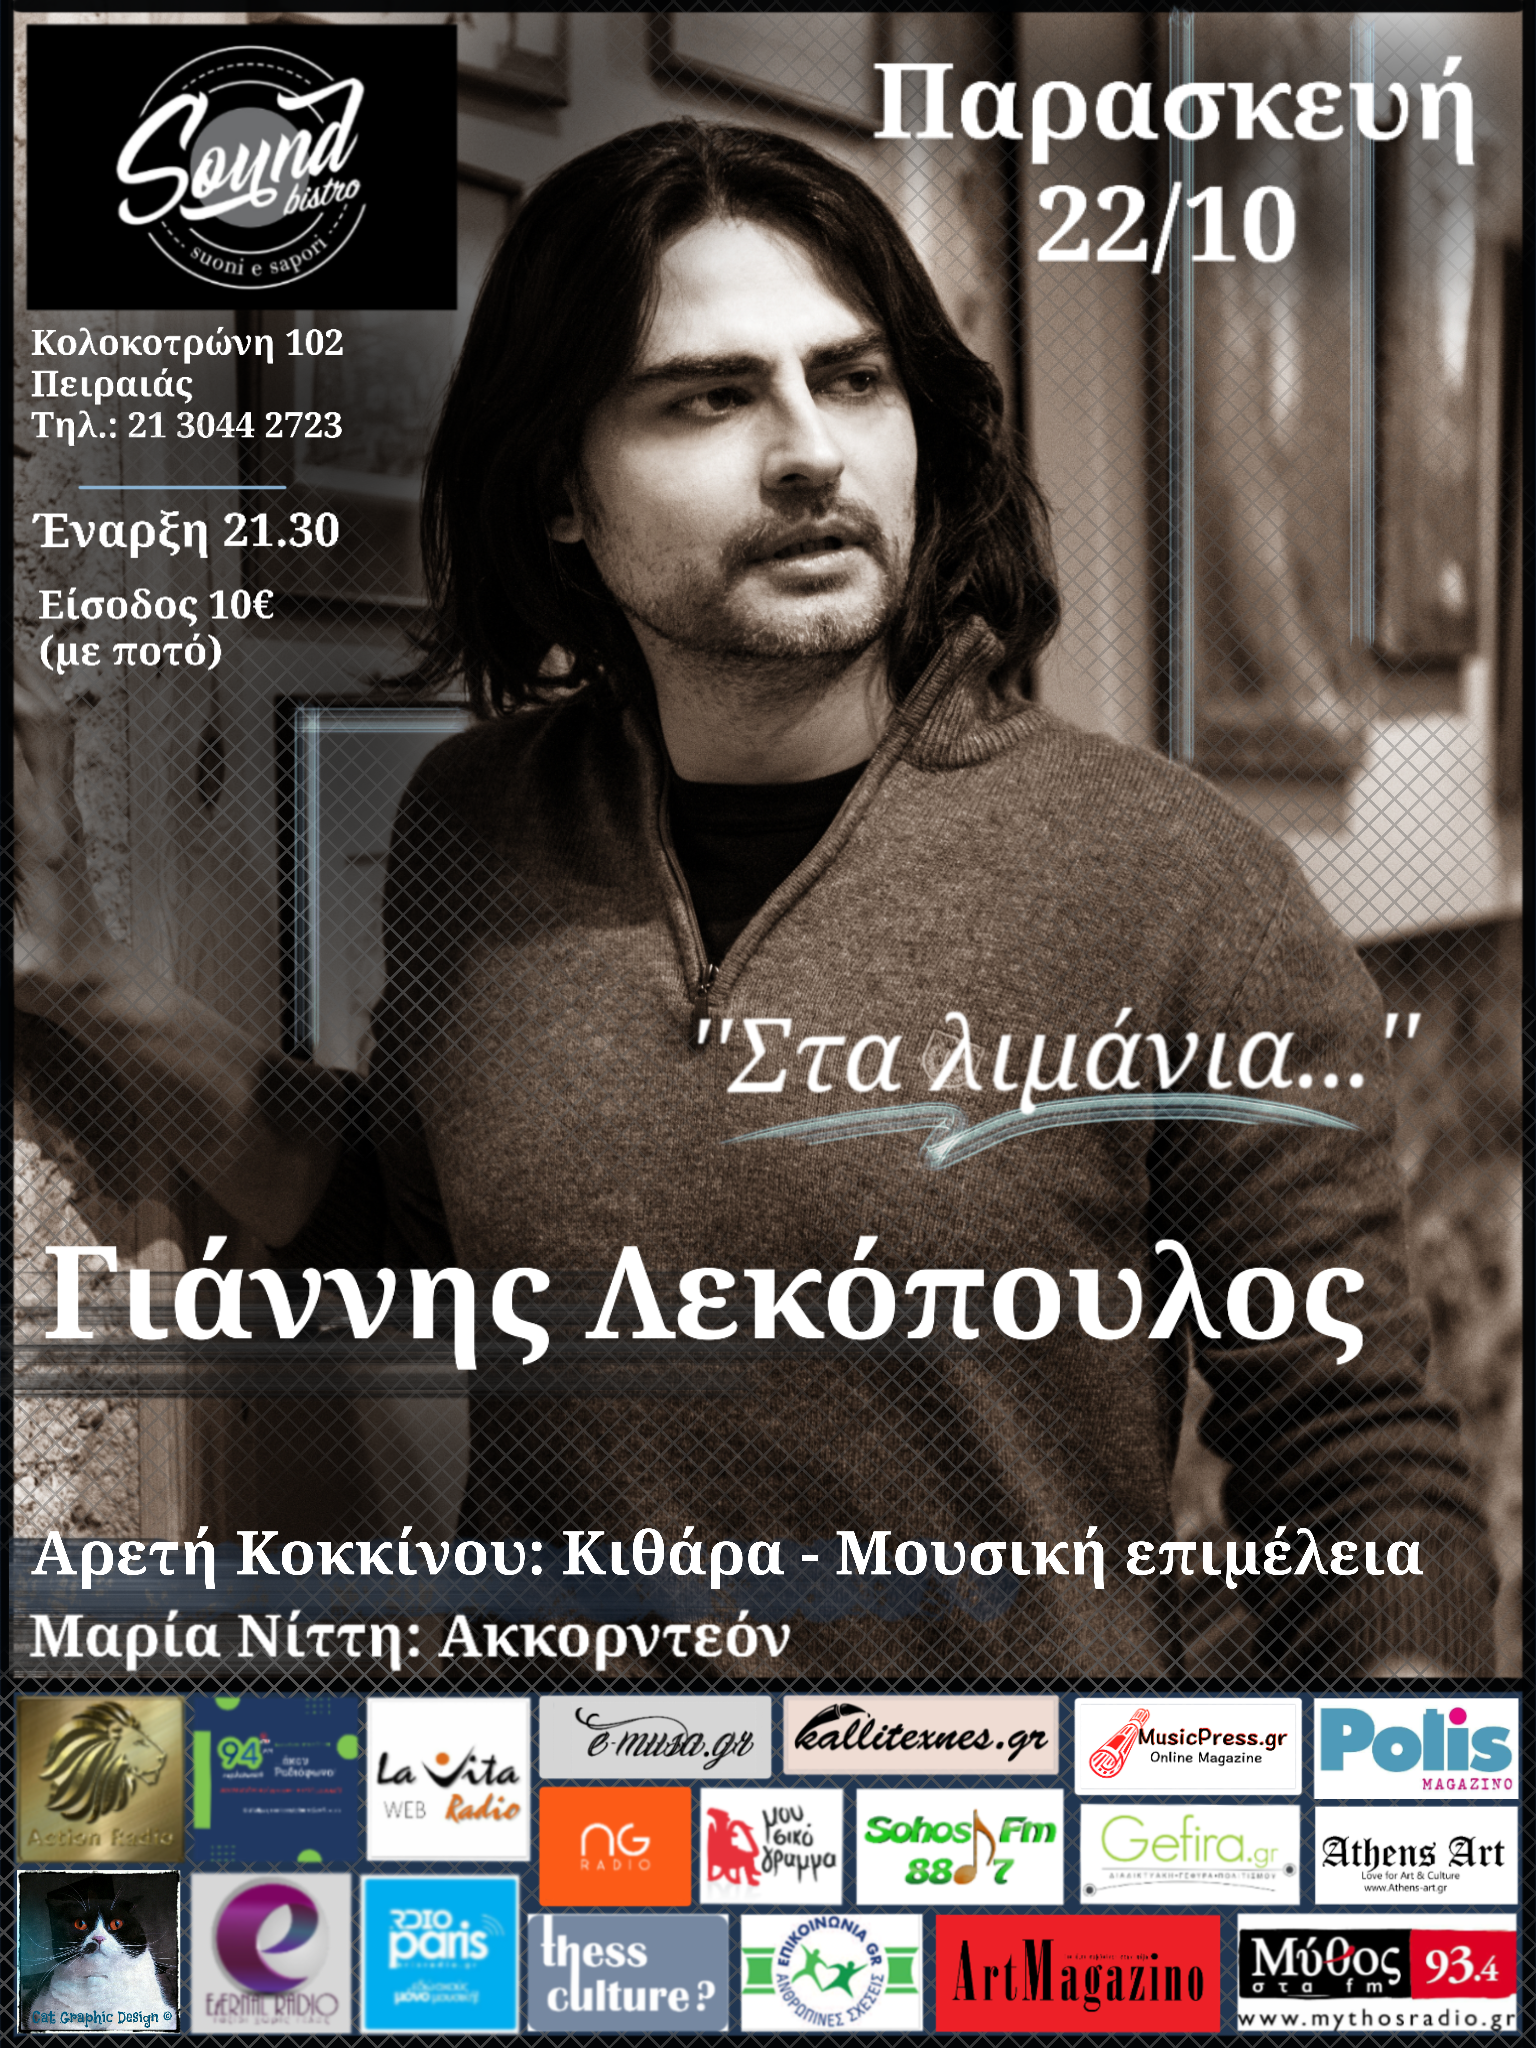 Γιάννης Λεκόπουλος Live